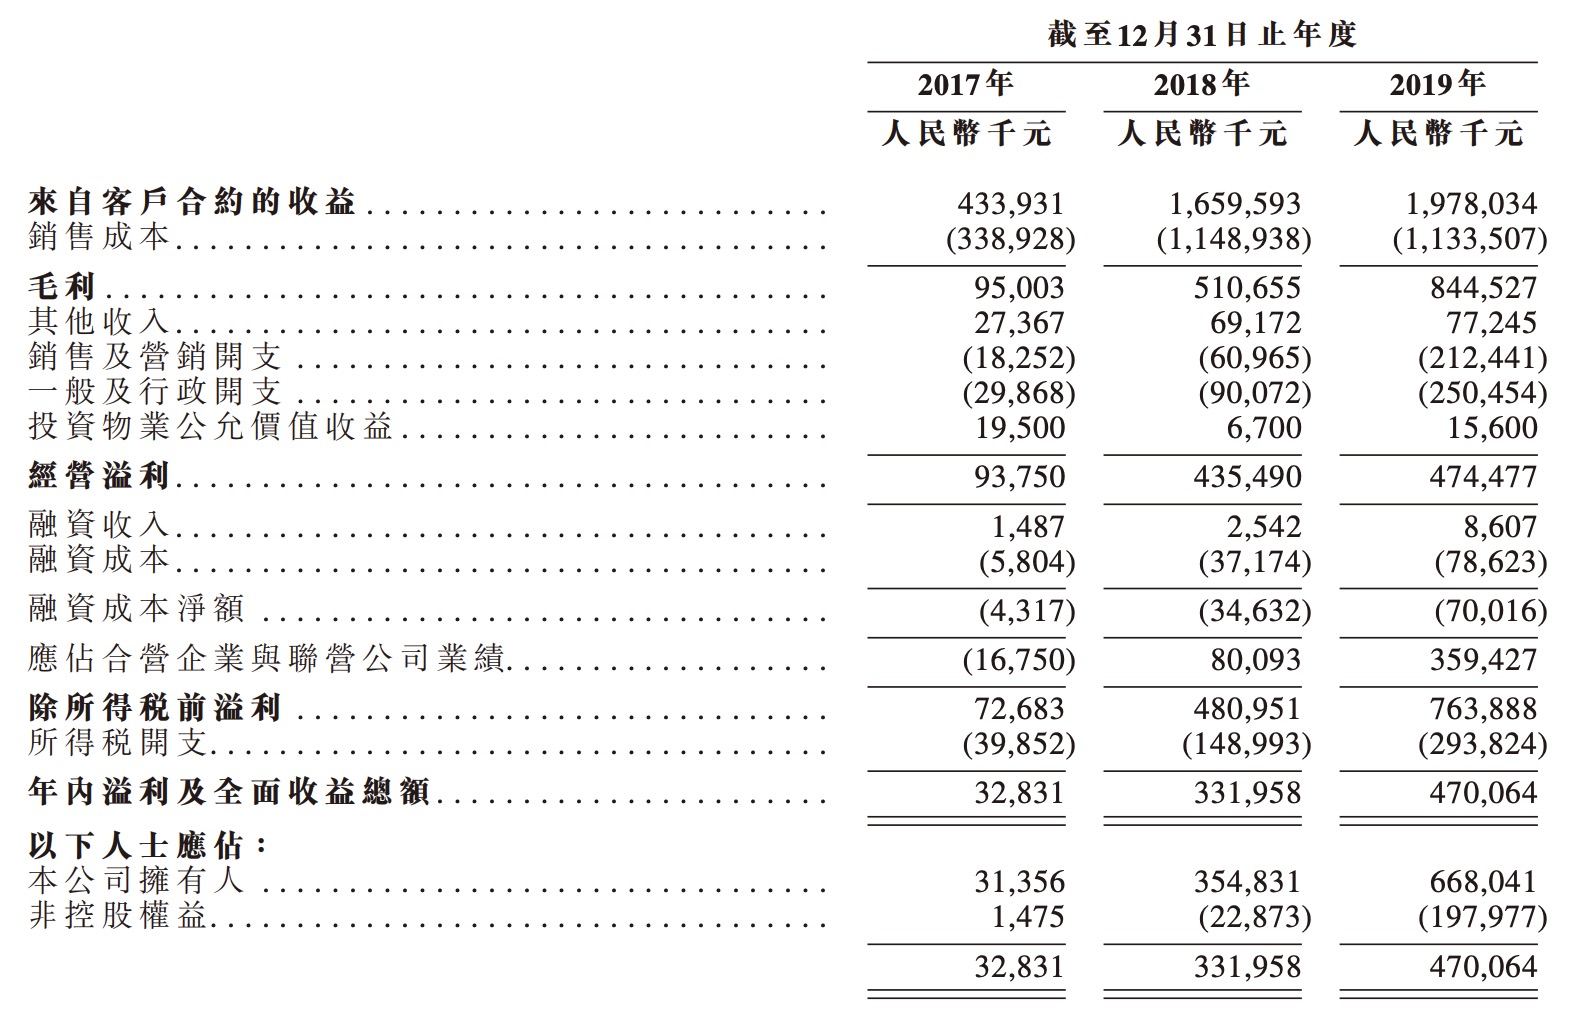 港龙中国递新表 毛利率达42.7%-中国网地产